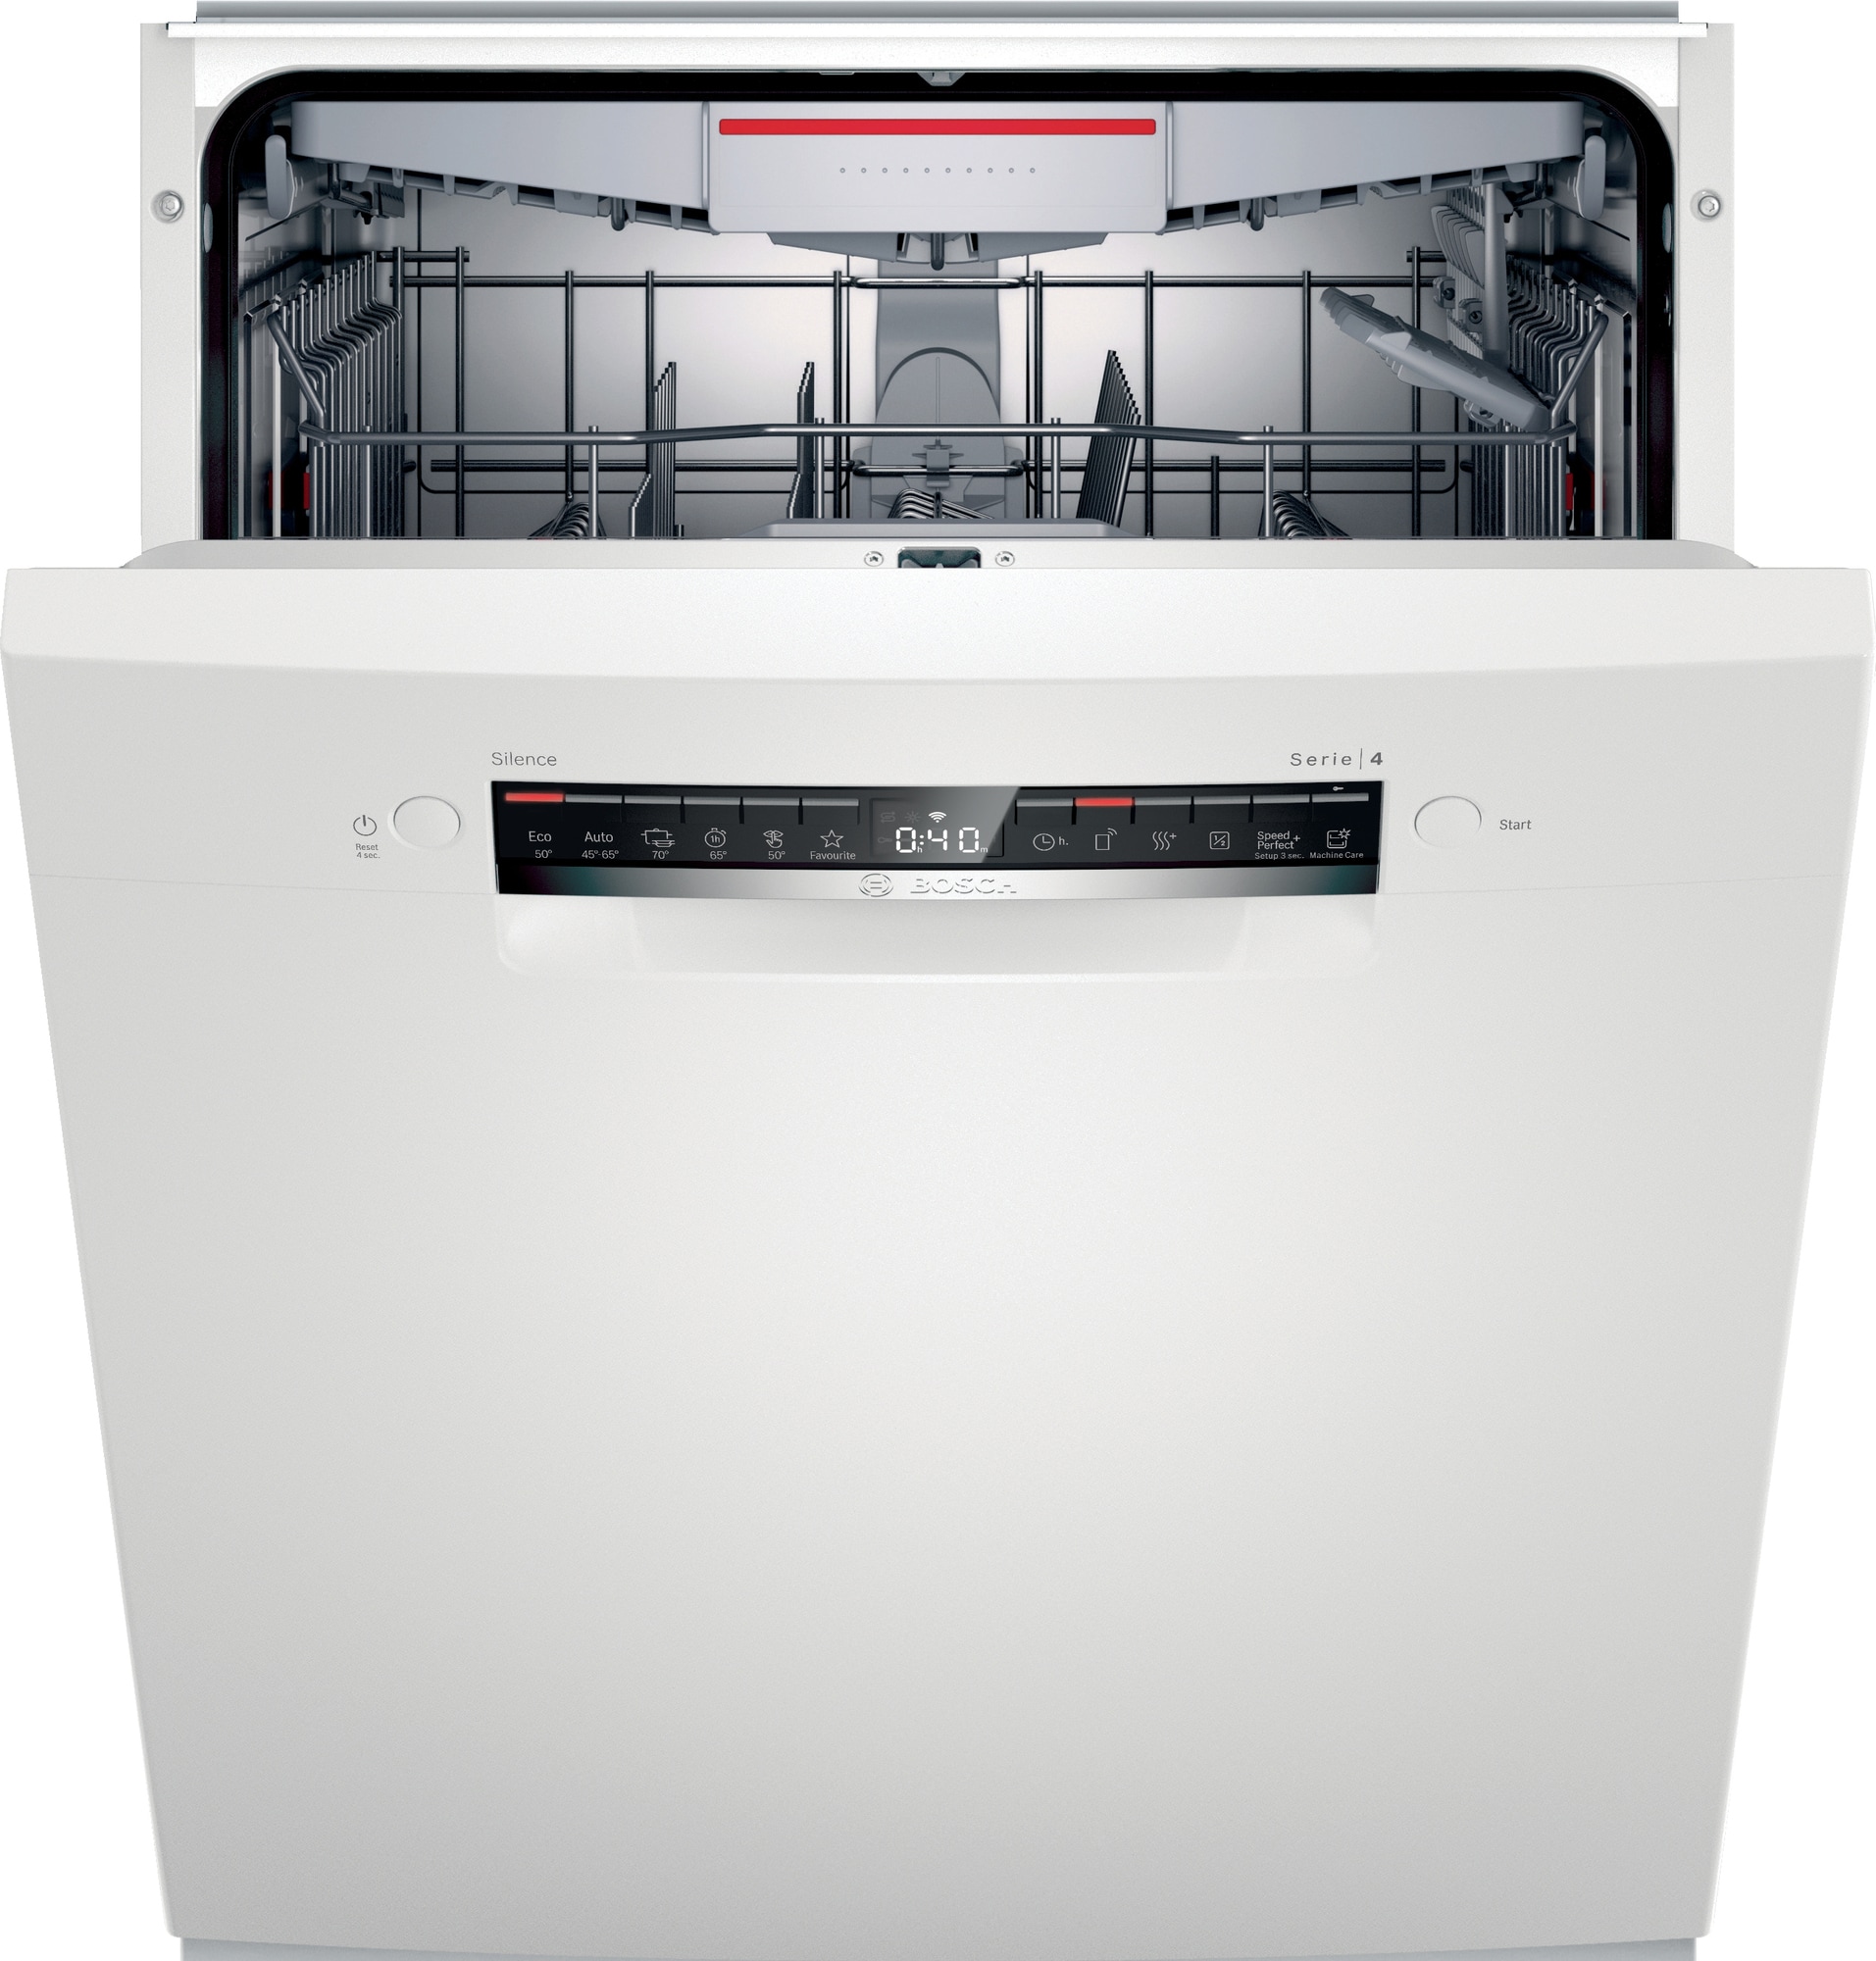 Effektiv og stilfuld Bosch opvaskemaskine - nøjagtigt hvad dit travle  køkken behøver